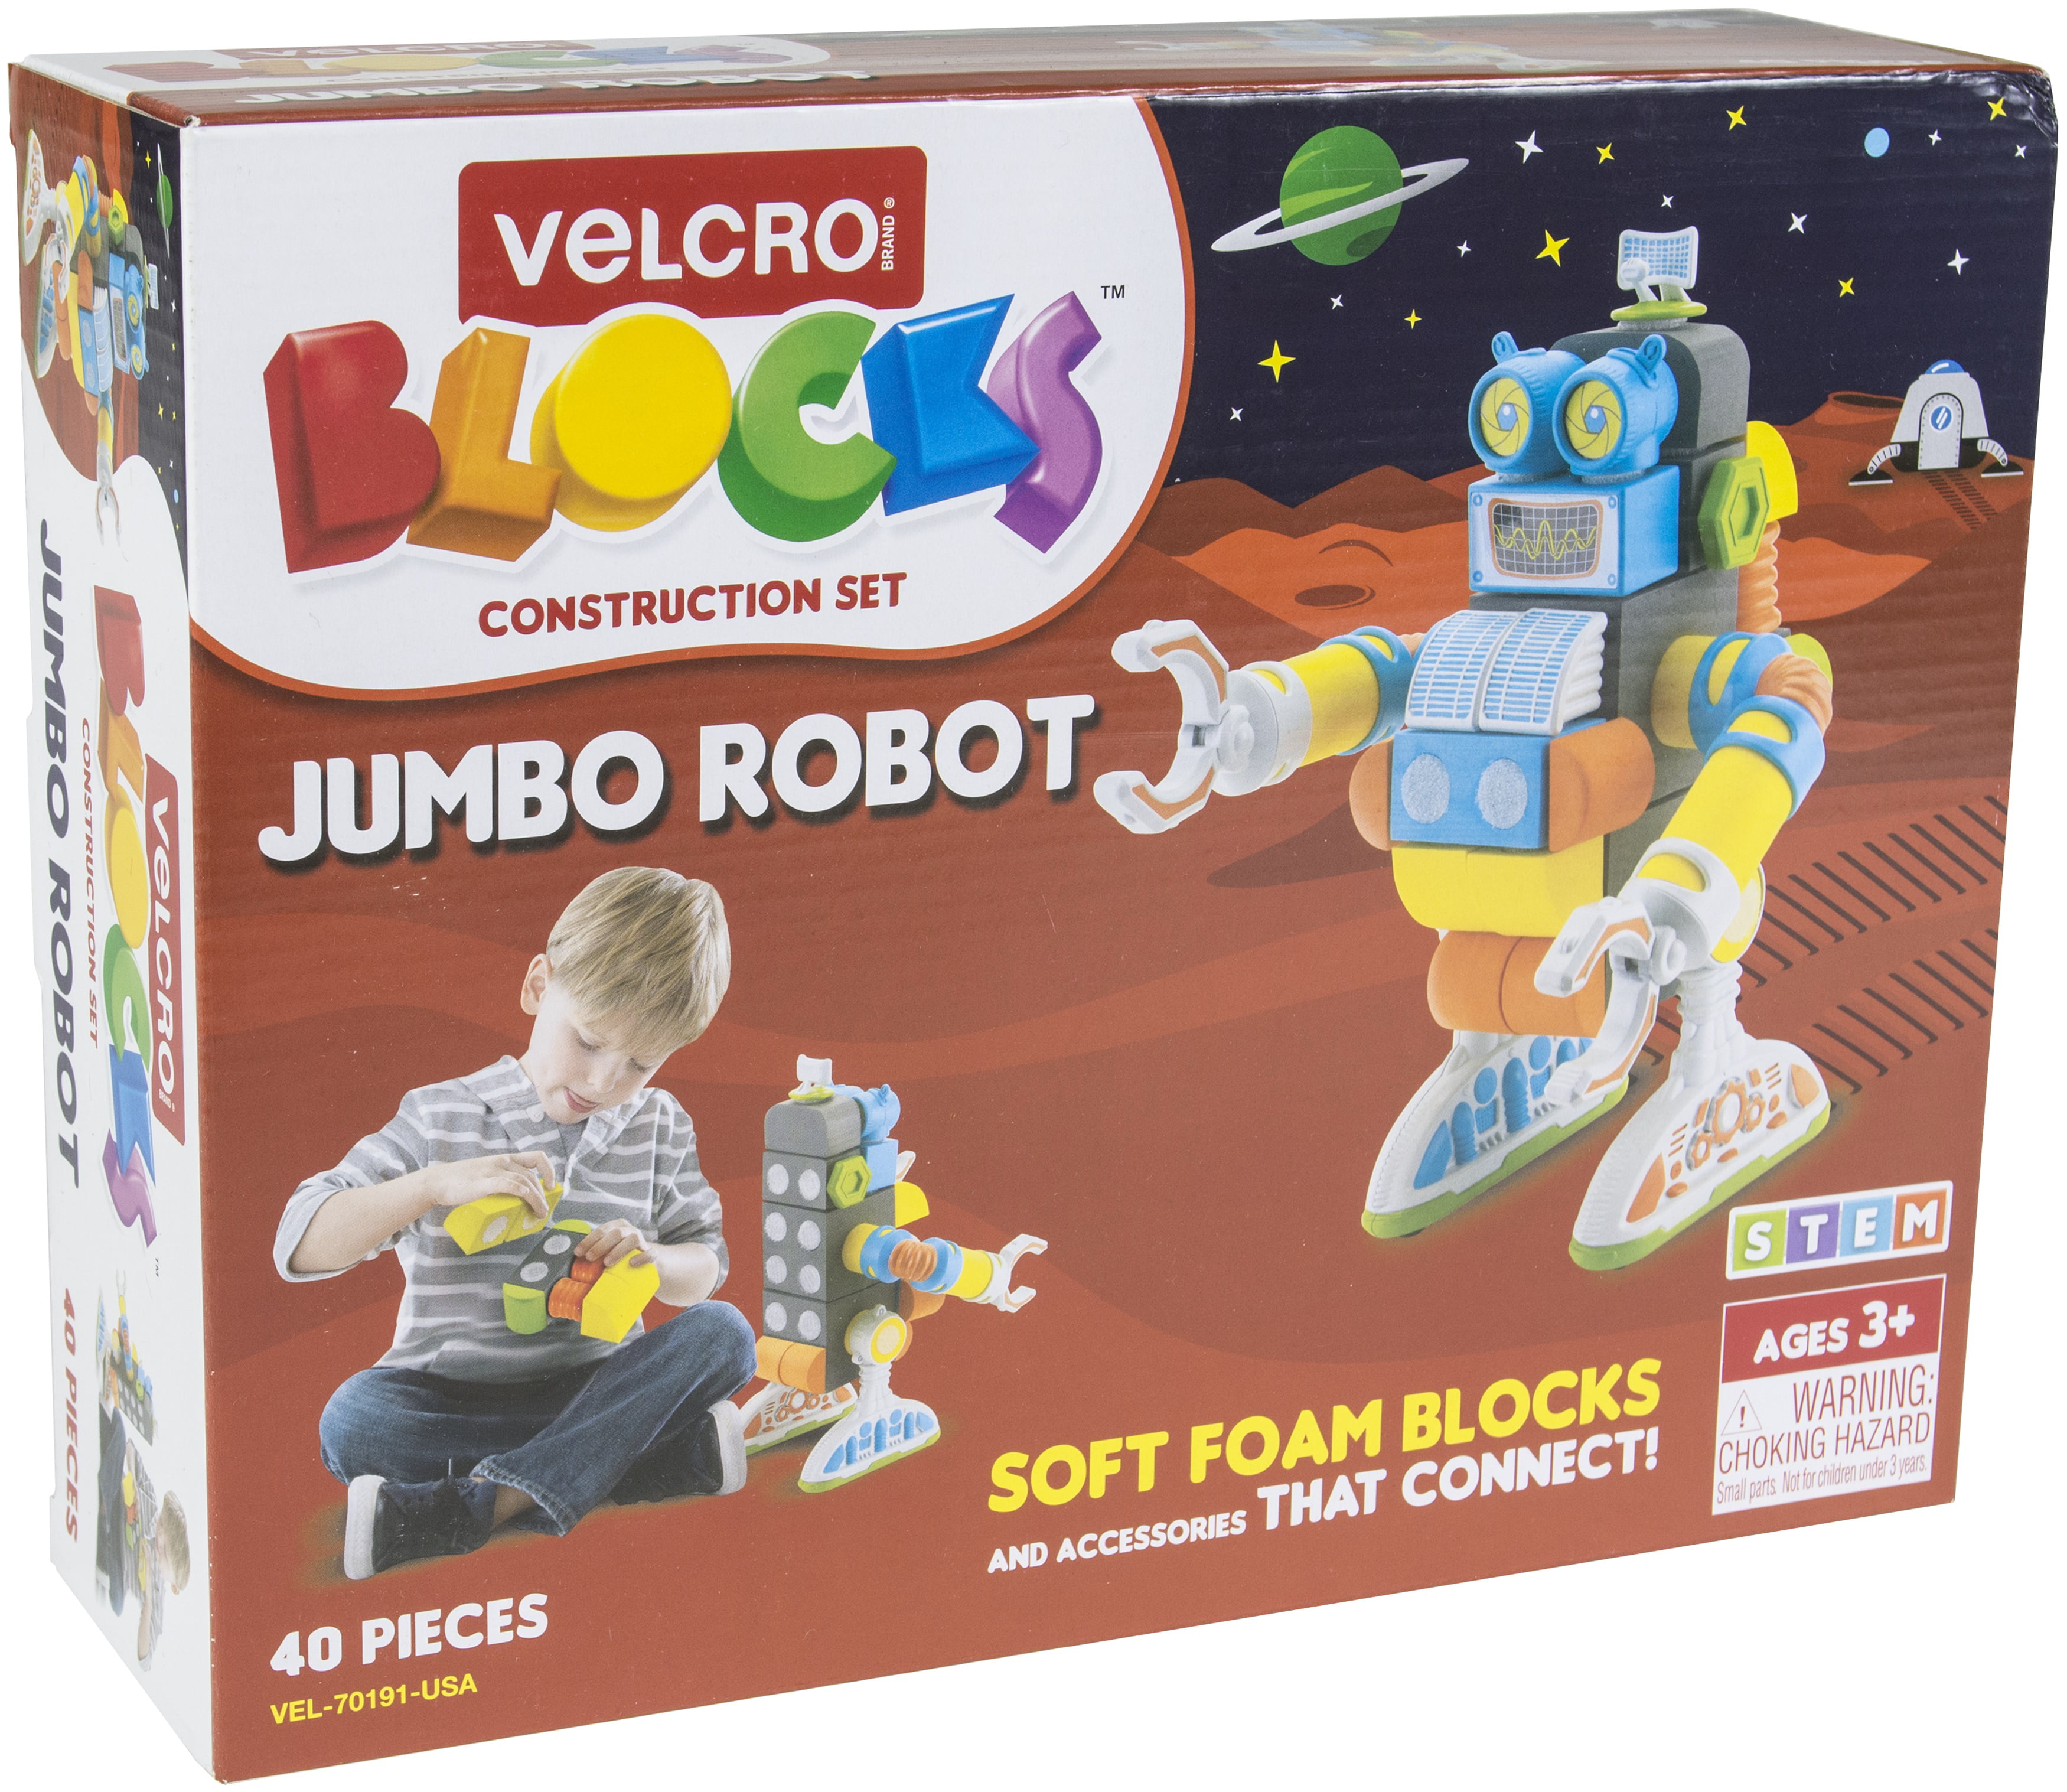 70189 Robot Velcro Blocks Construction Set Foam Building Toy Ages 3 